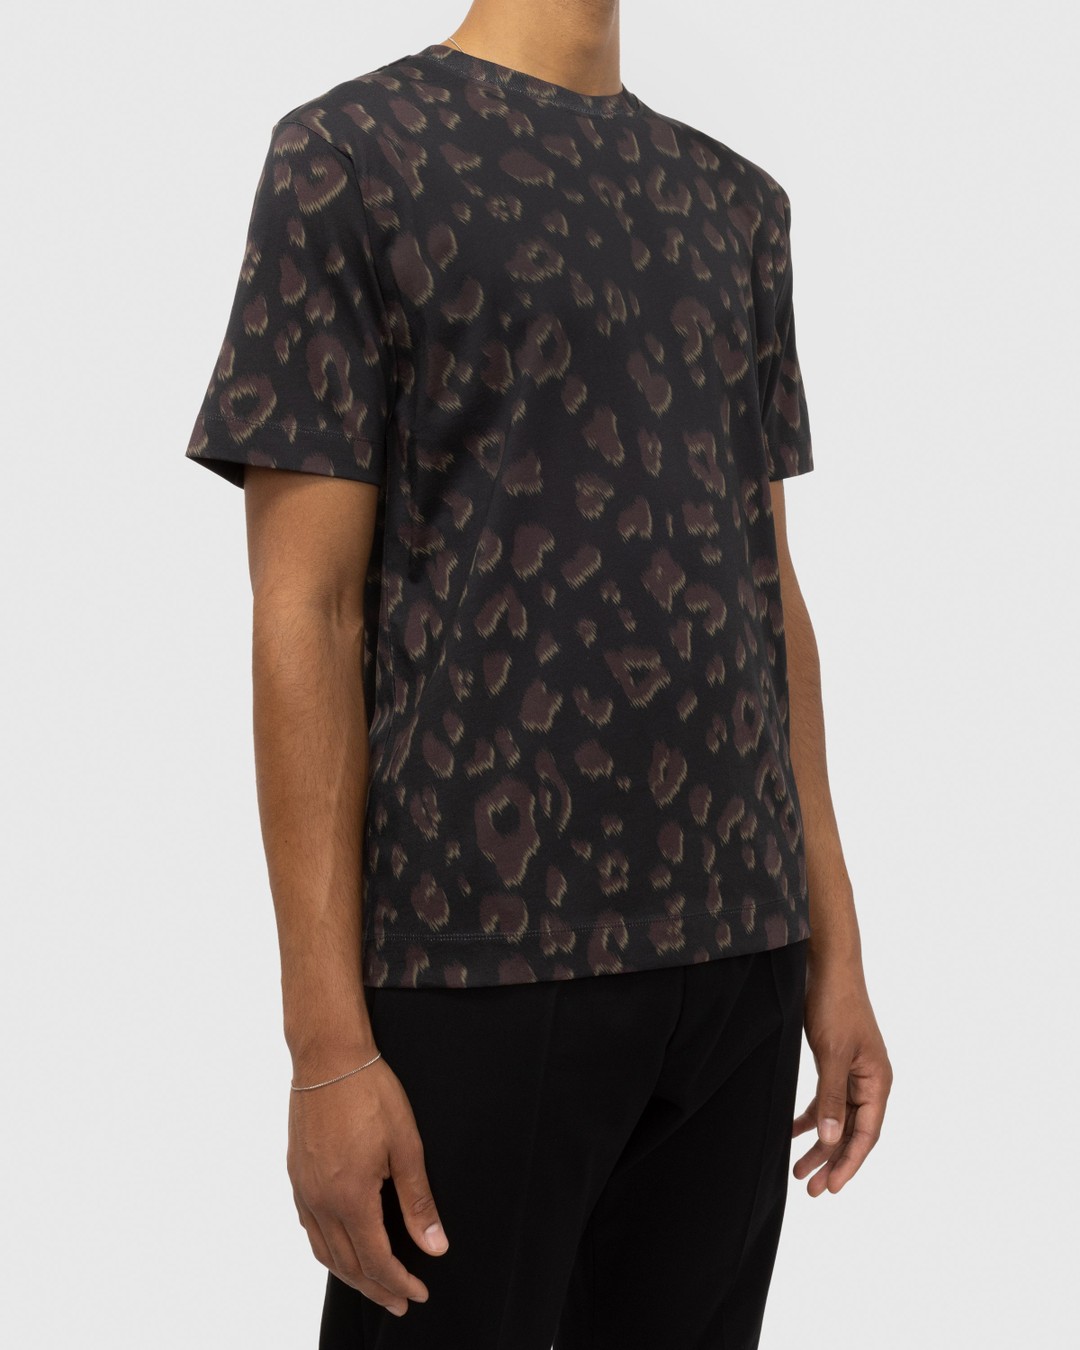 Dries van Noten – Hertz T-Shirt Black - Tops - Black - Image 2